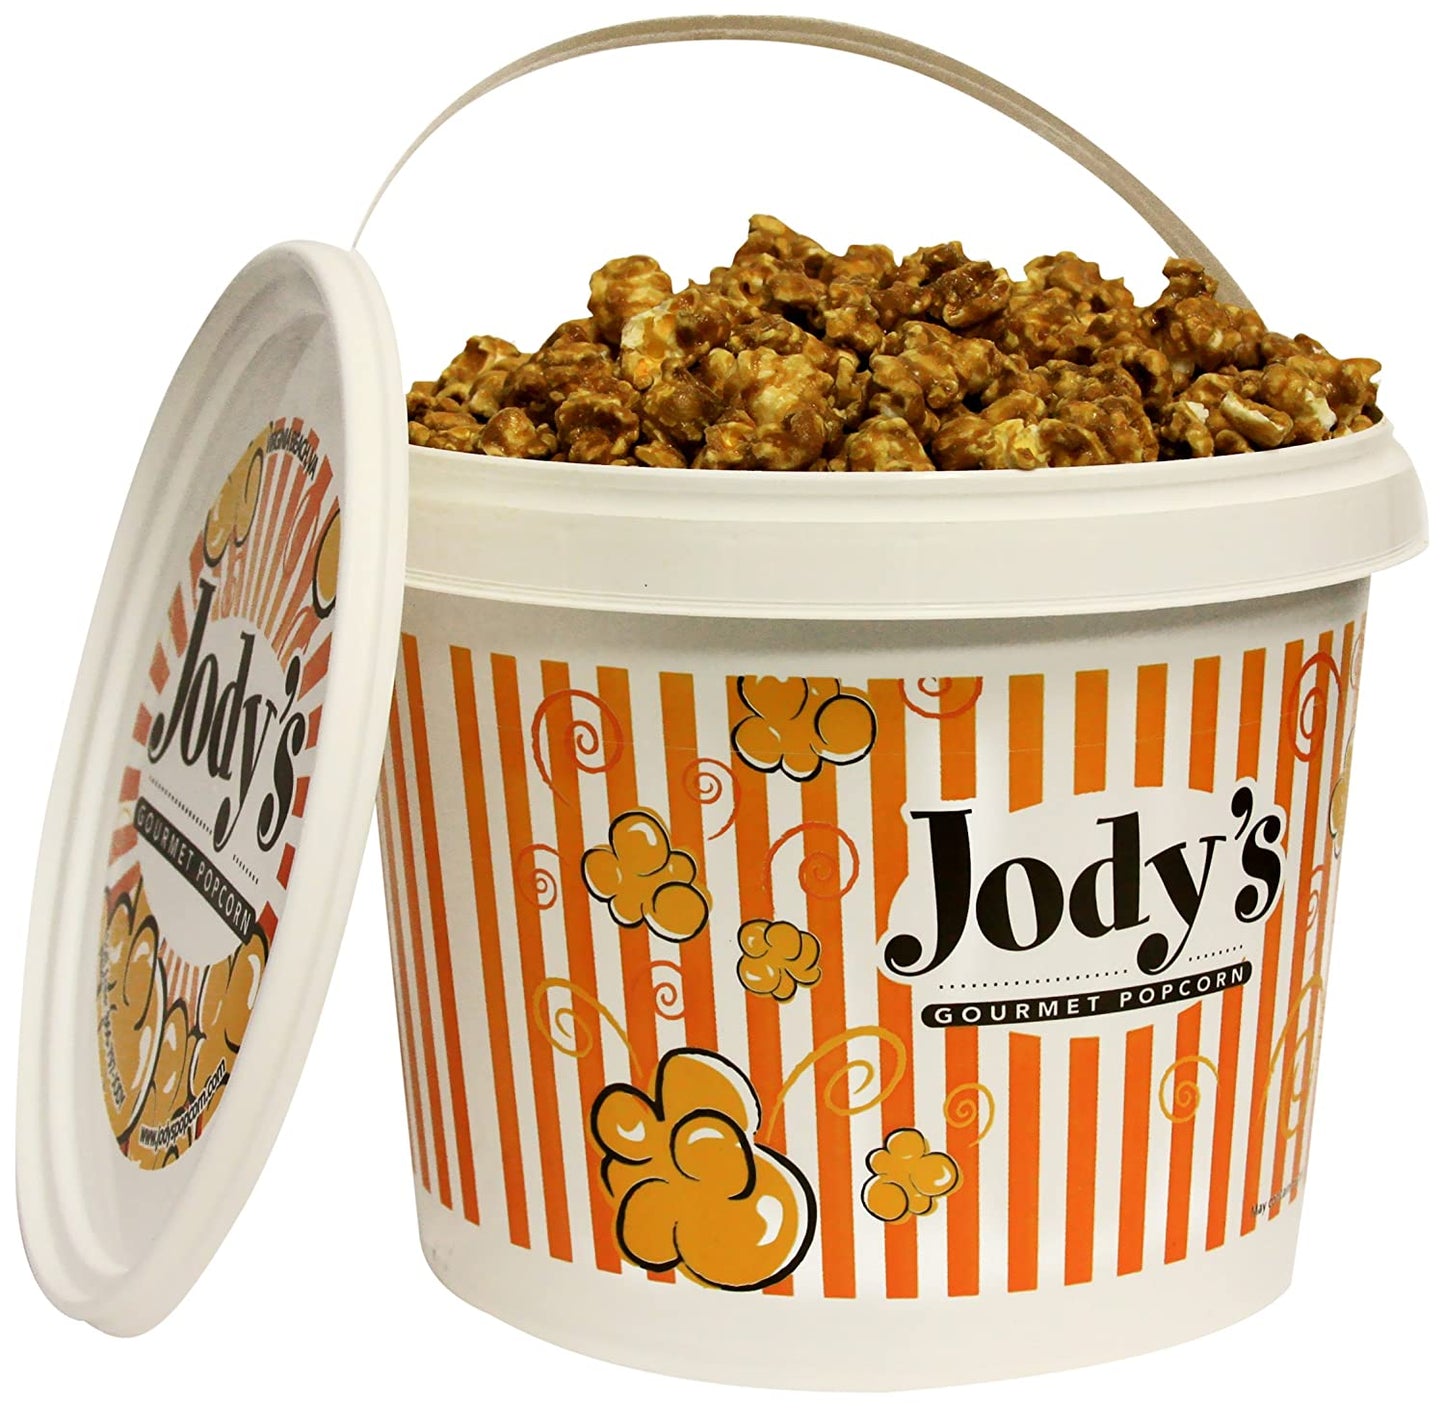 Jody's Gourmet Popcorn Recipe 53 Caramel, 37.5 OunceJody's Gourmet Popcorn Recipe 53 Caramel, 37.5 Ounce